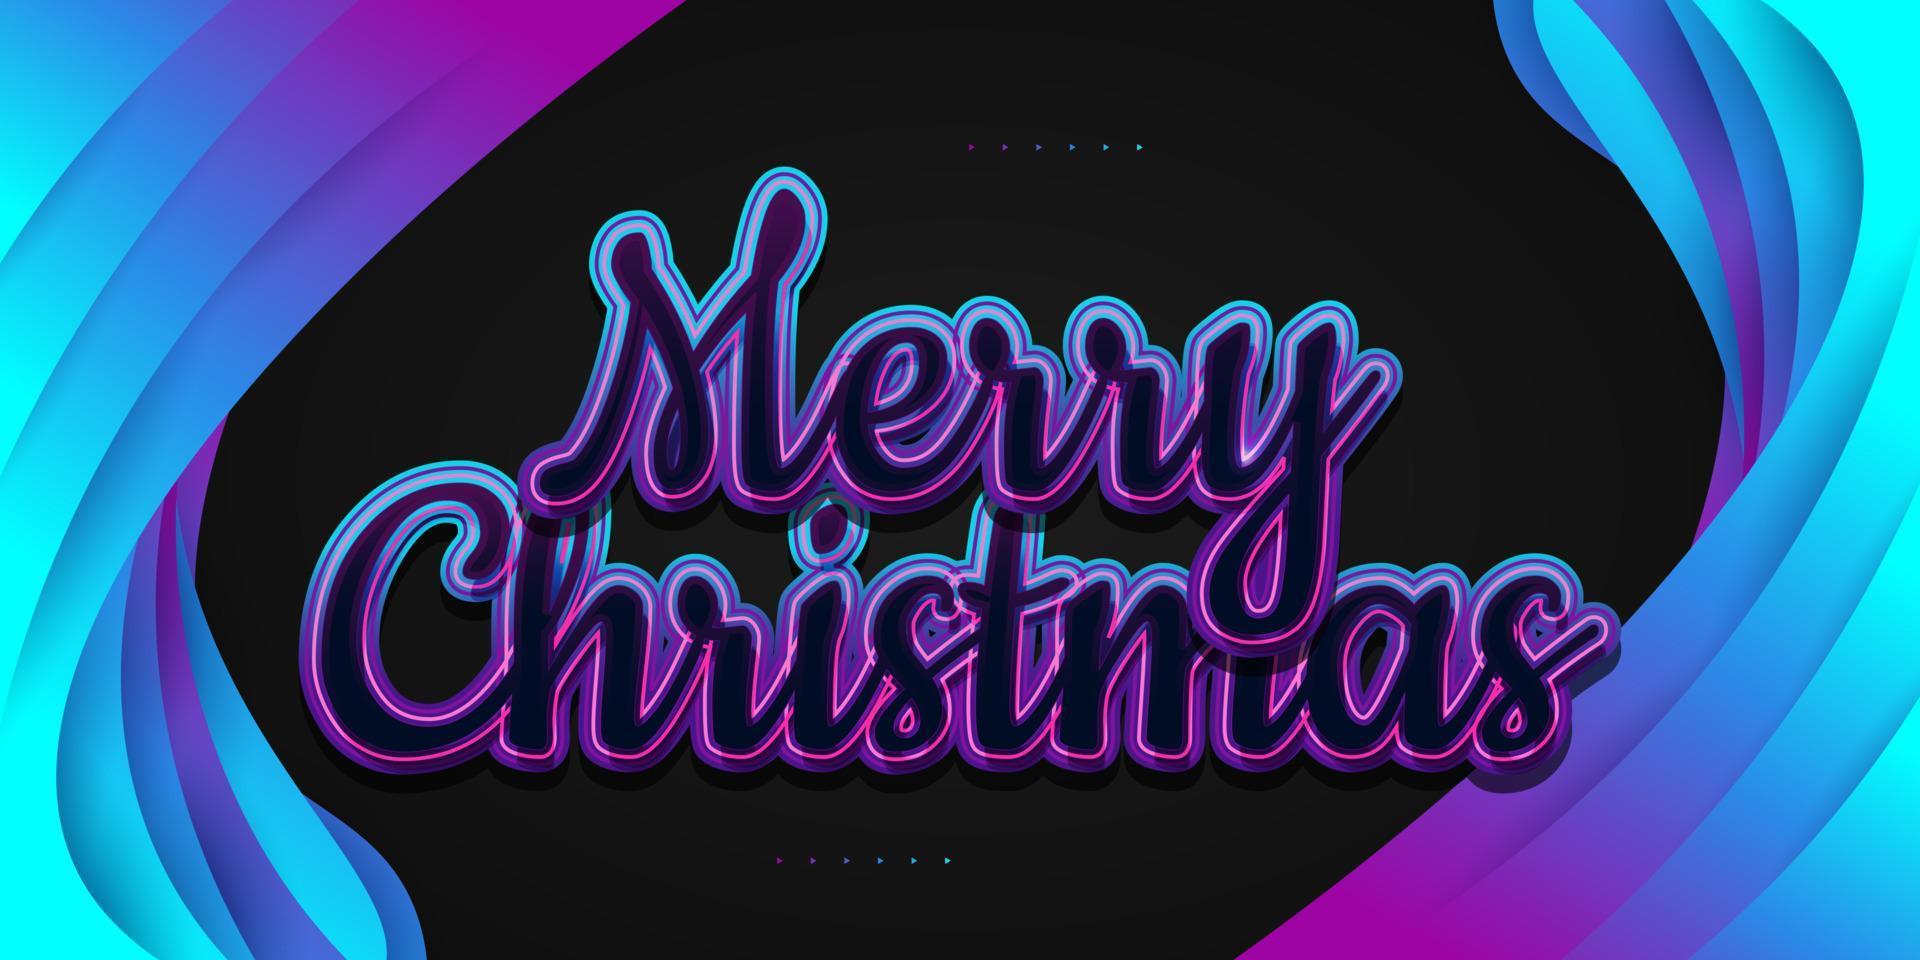 letras de mão de feliz Natal em estilo colorido com efeito brilhante. projeto de natal para banner, cartaz ou cartão comemorativo vetor